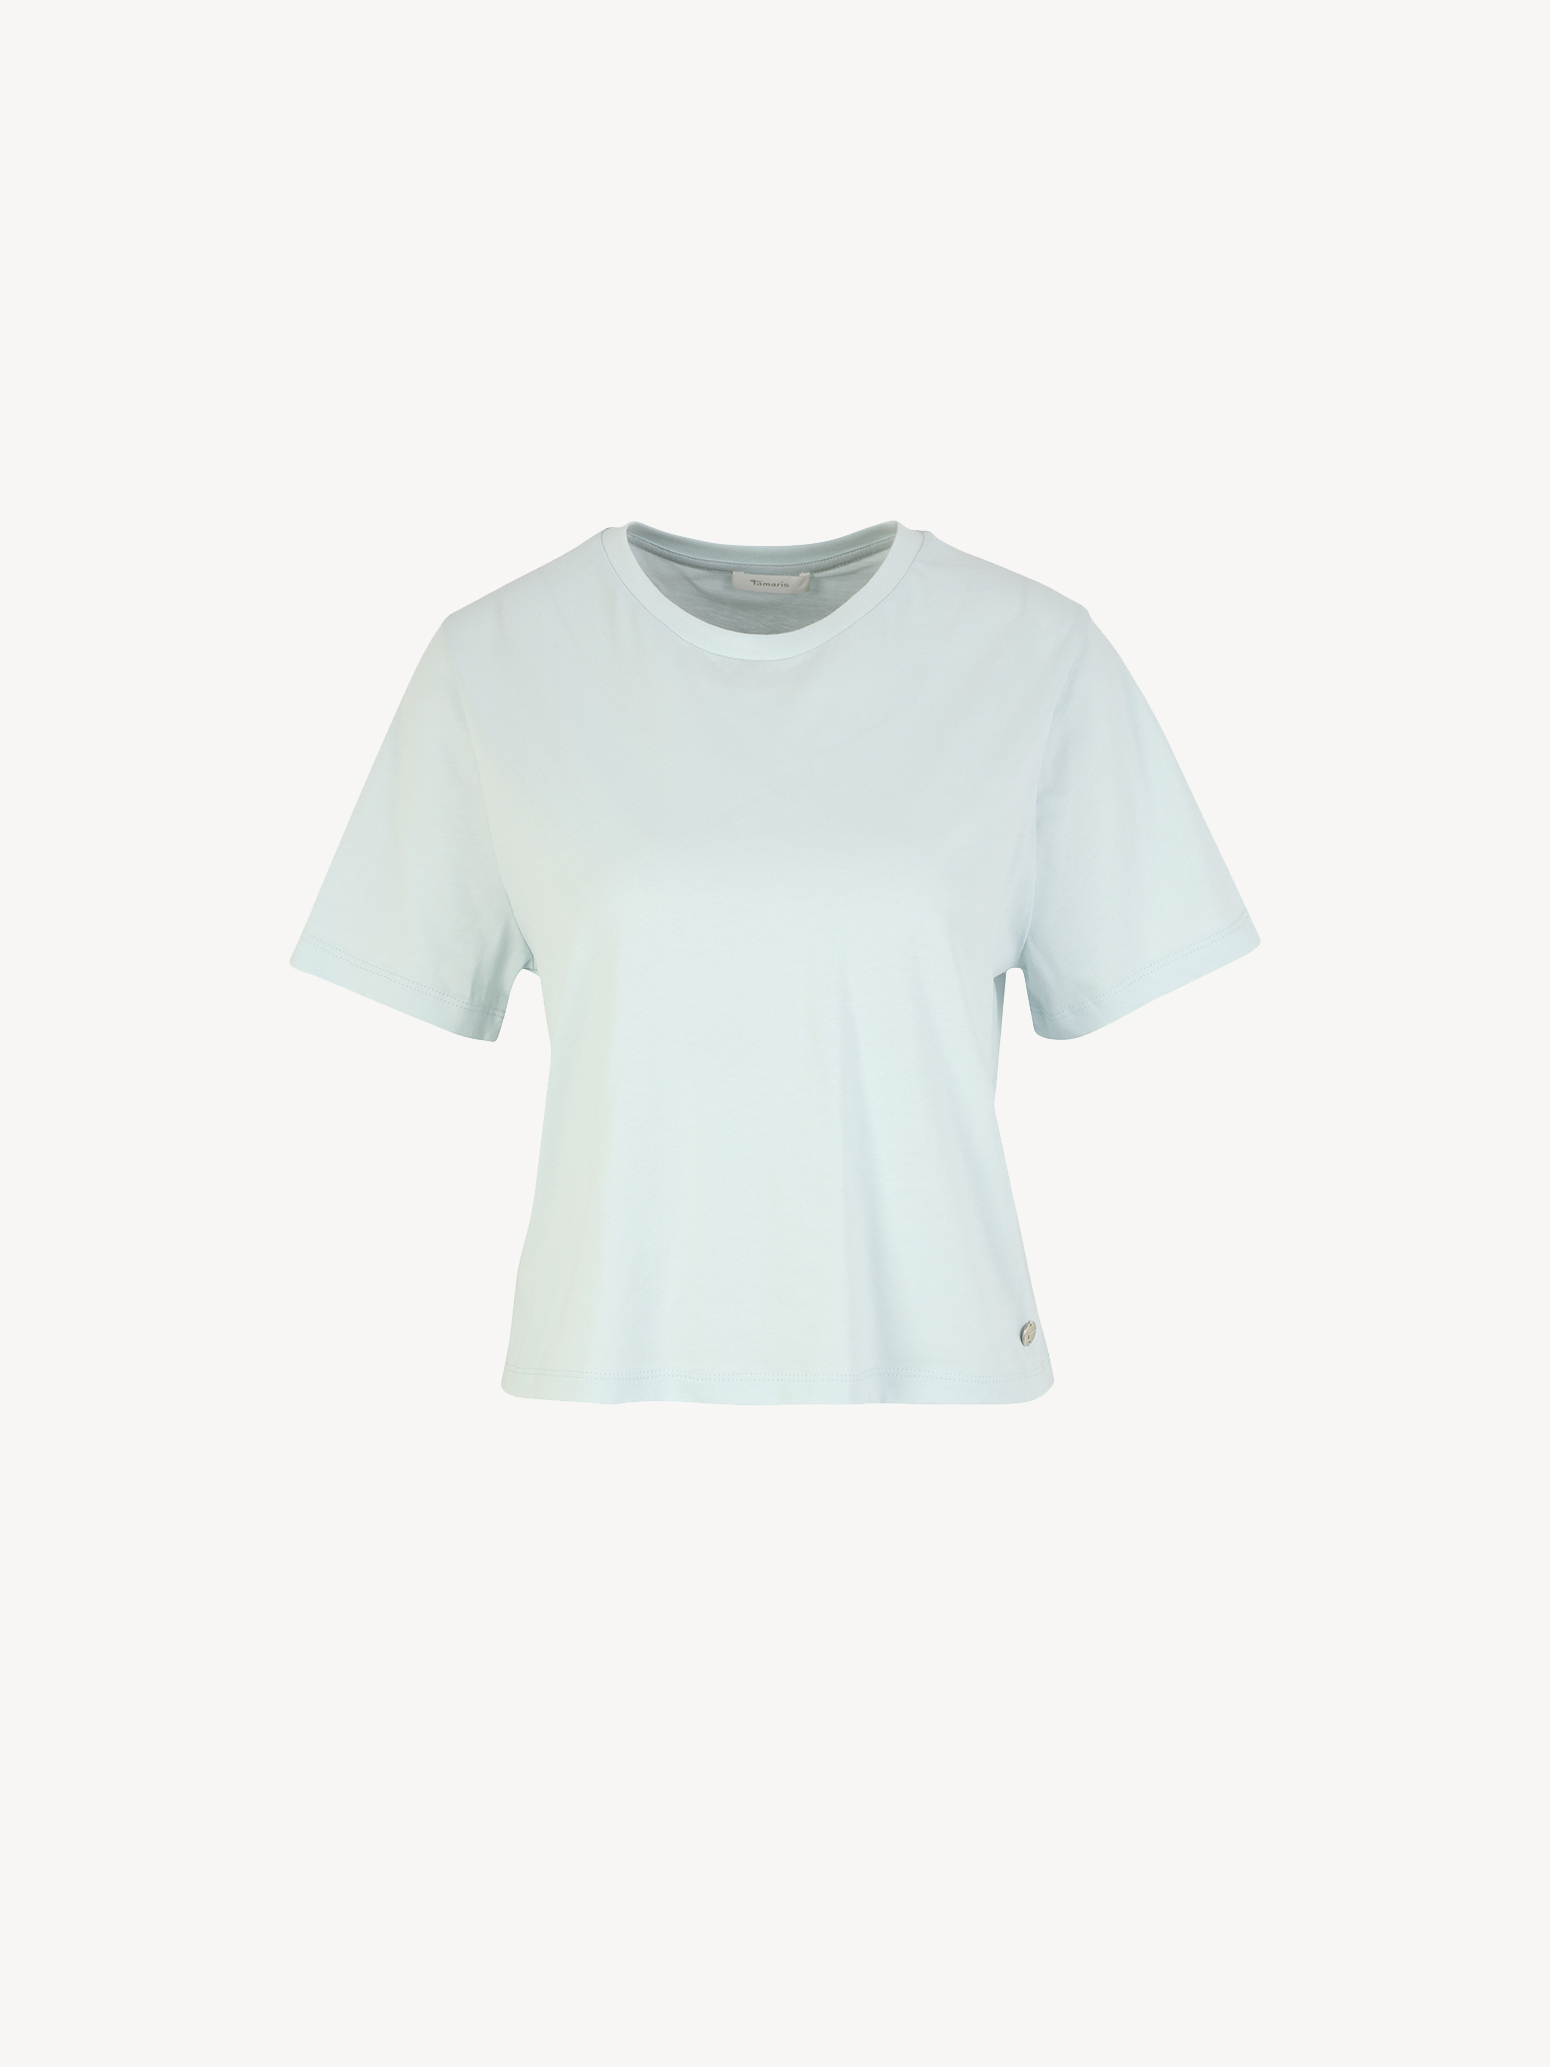 Buy Tamaris Shirts Tops online & now